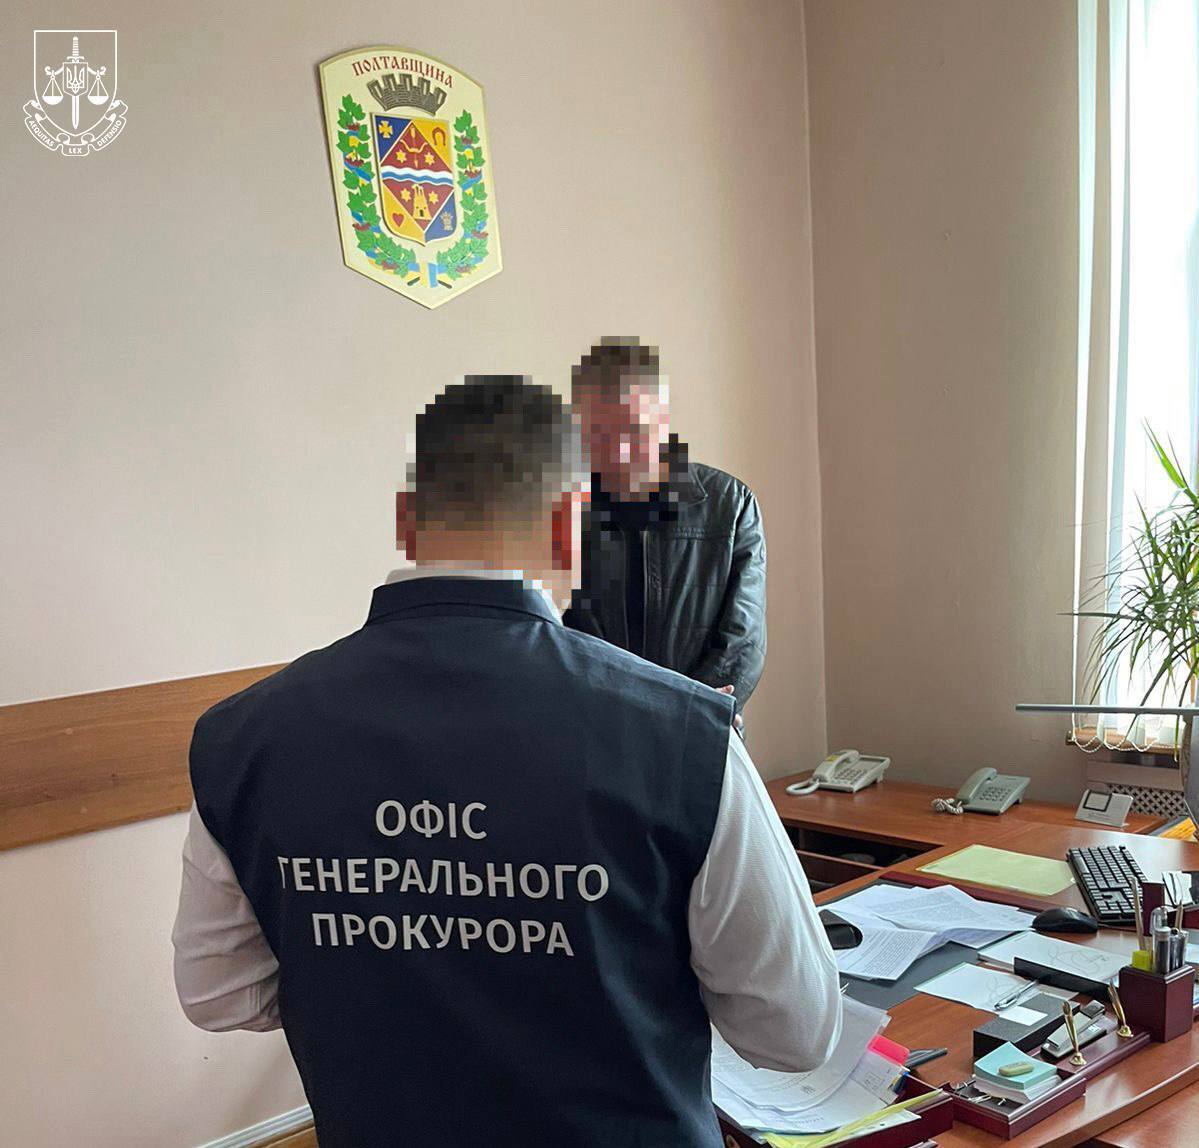 Заместителя председателя Полтавского облсовета подозревают в преступлении